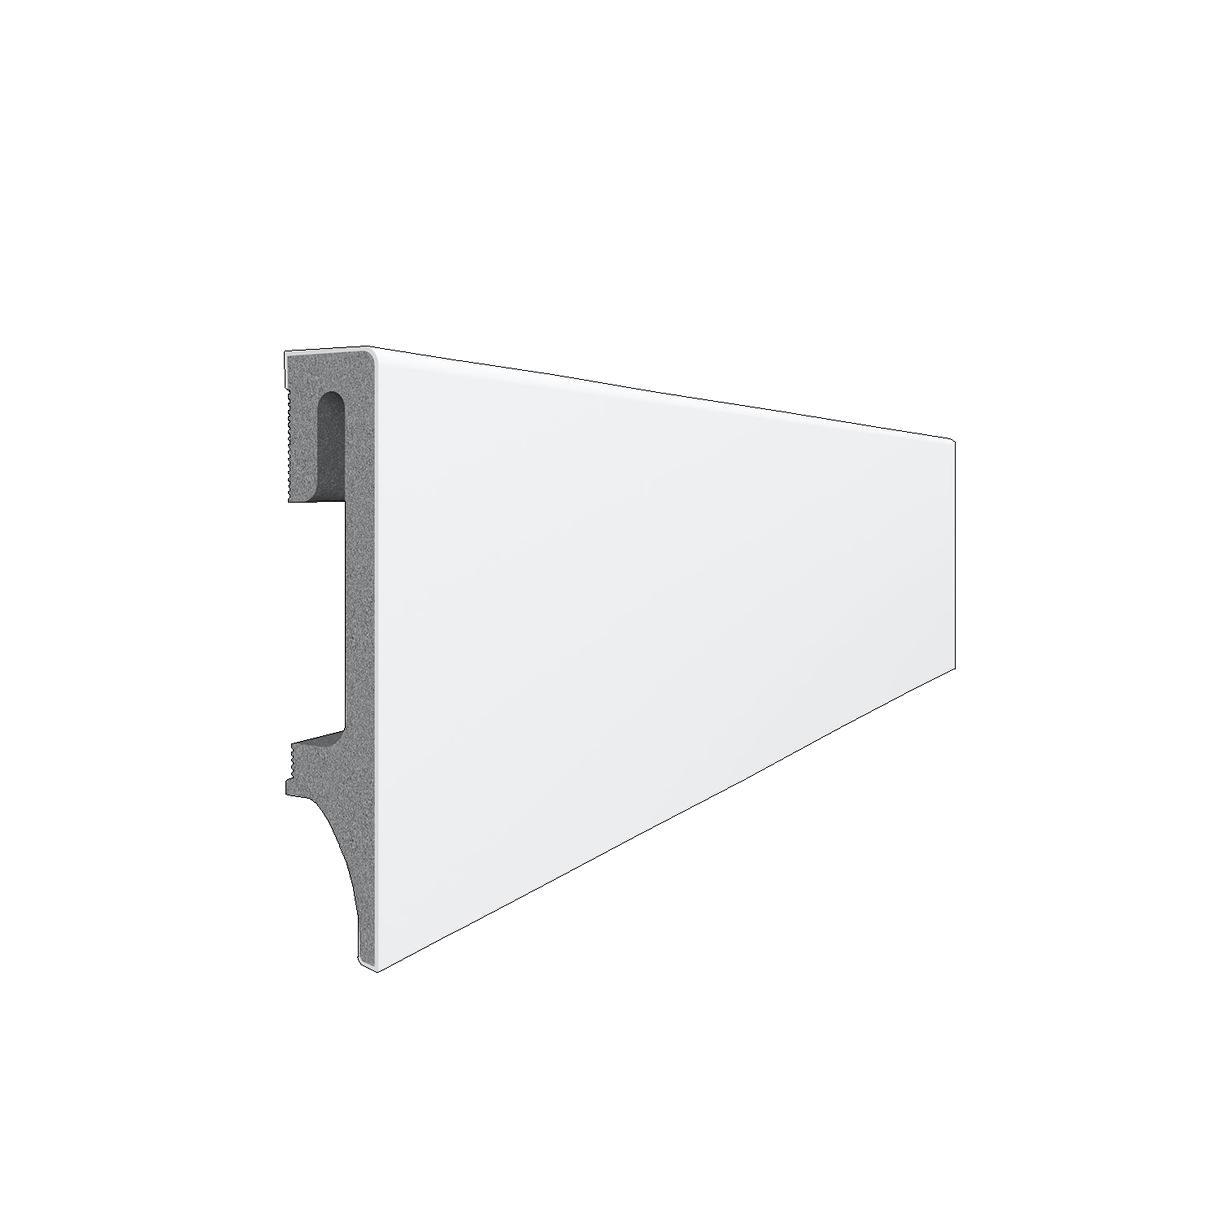 Vox Skirting Board 80mm - White